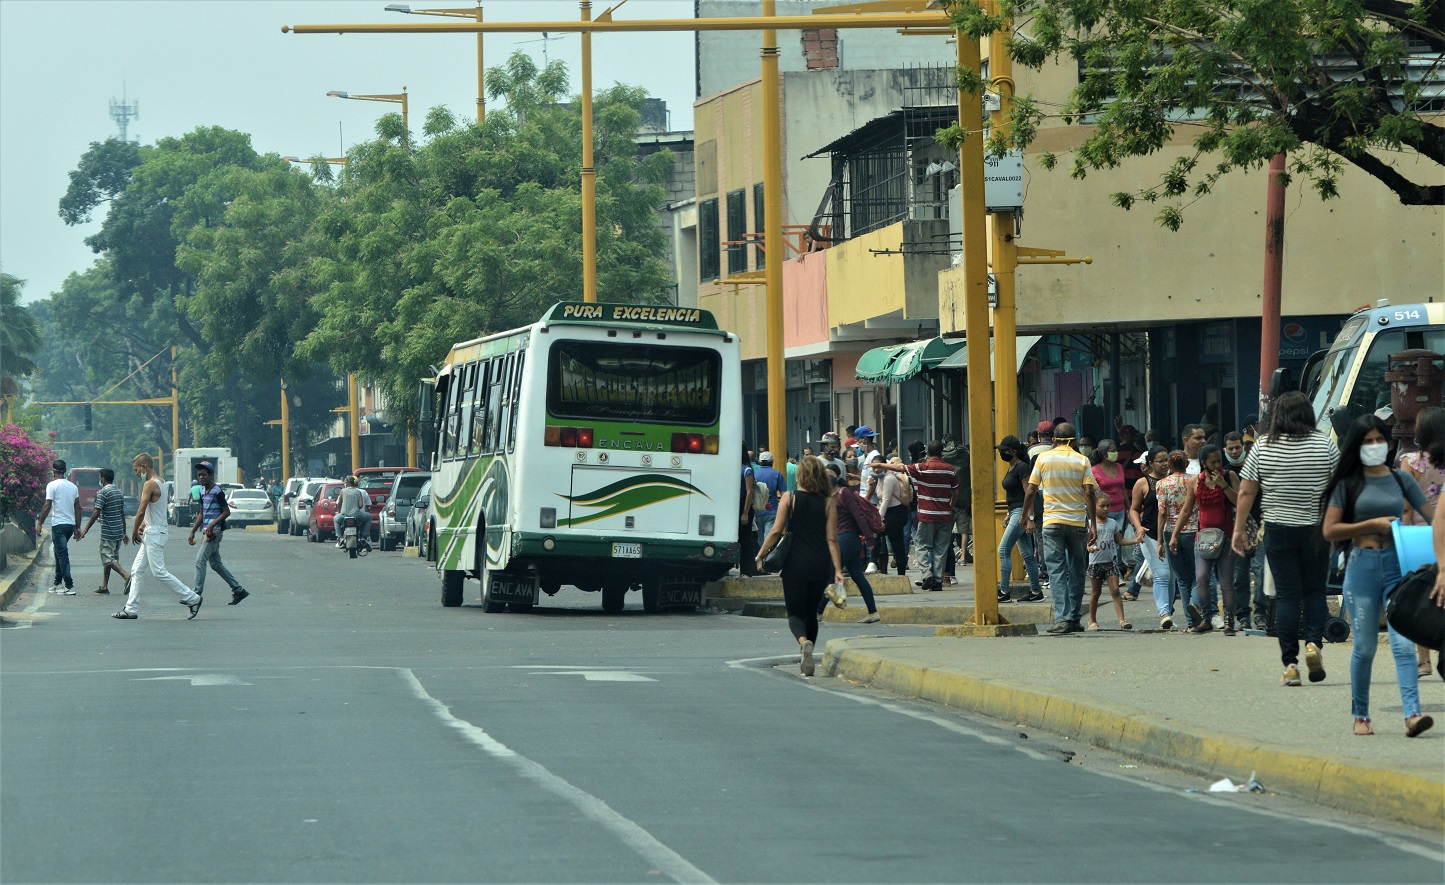 Autobuses de ruta larga - Autobuses de ruta larga